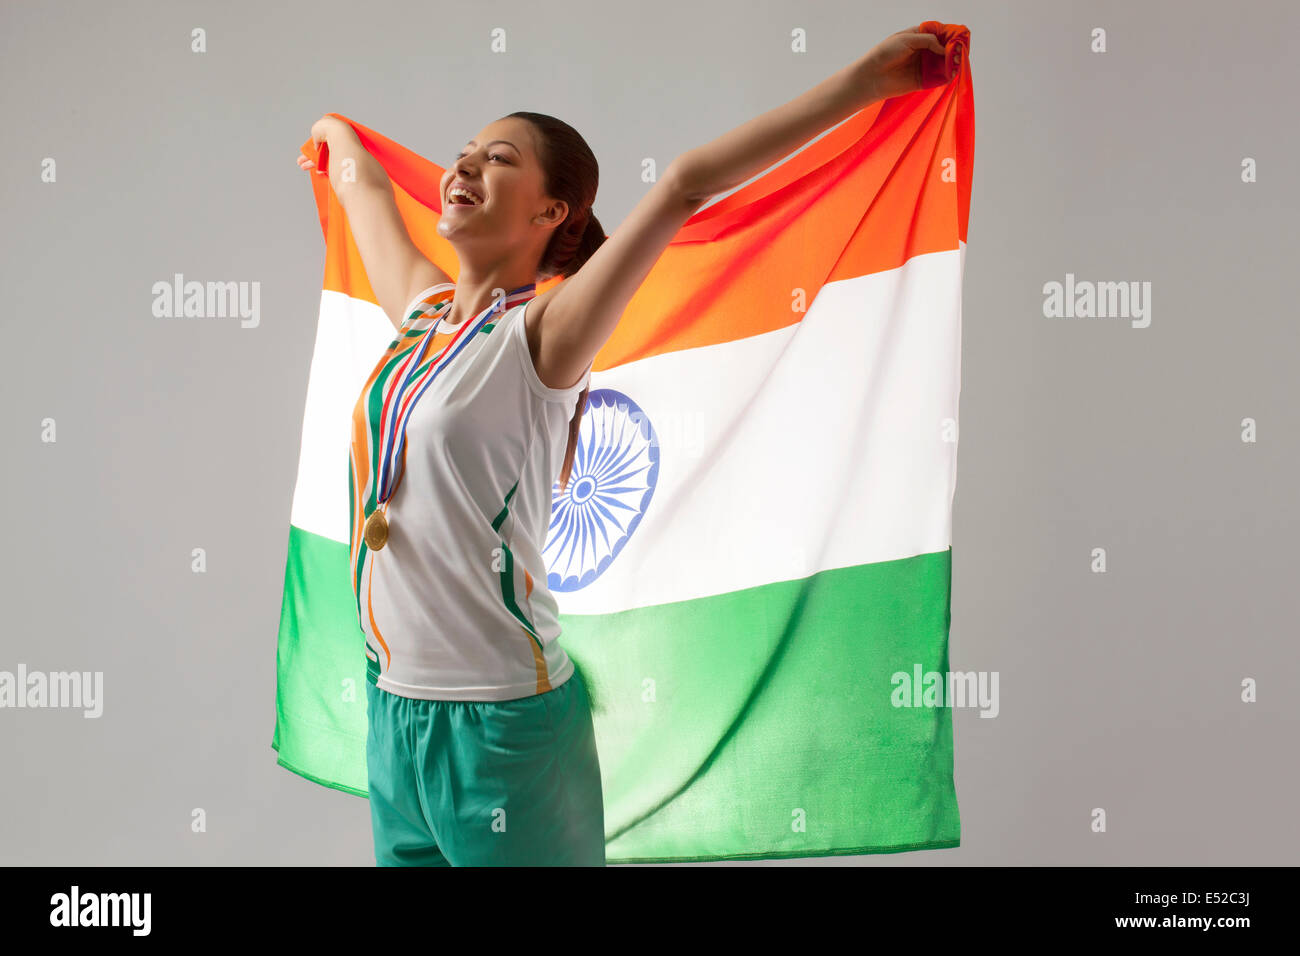 Jeune femme célèbre médaillé de la victoire avec drapeau indien isolé sur fond gris Banque D'Images